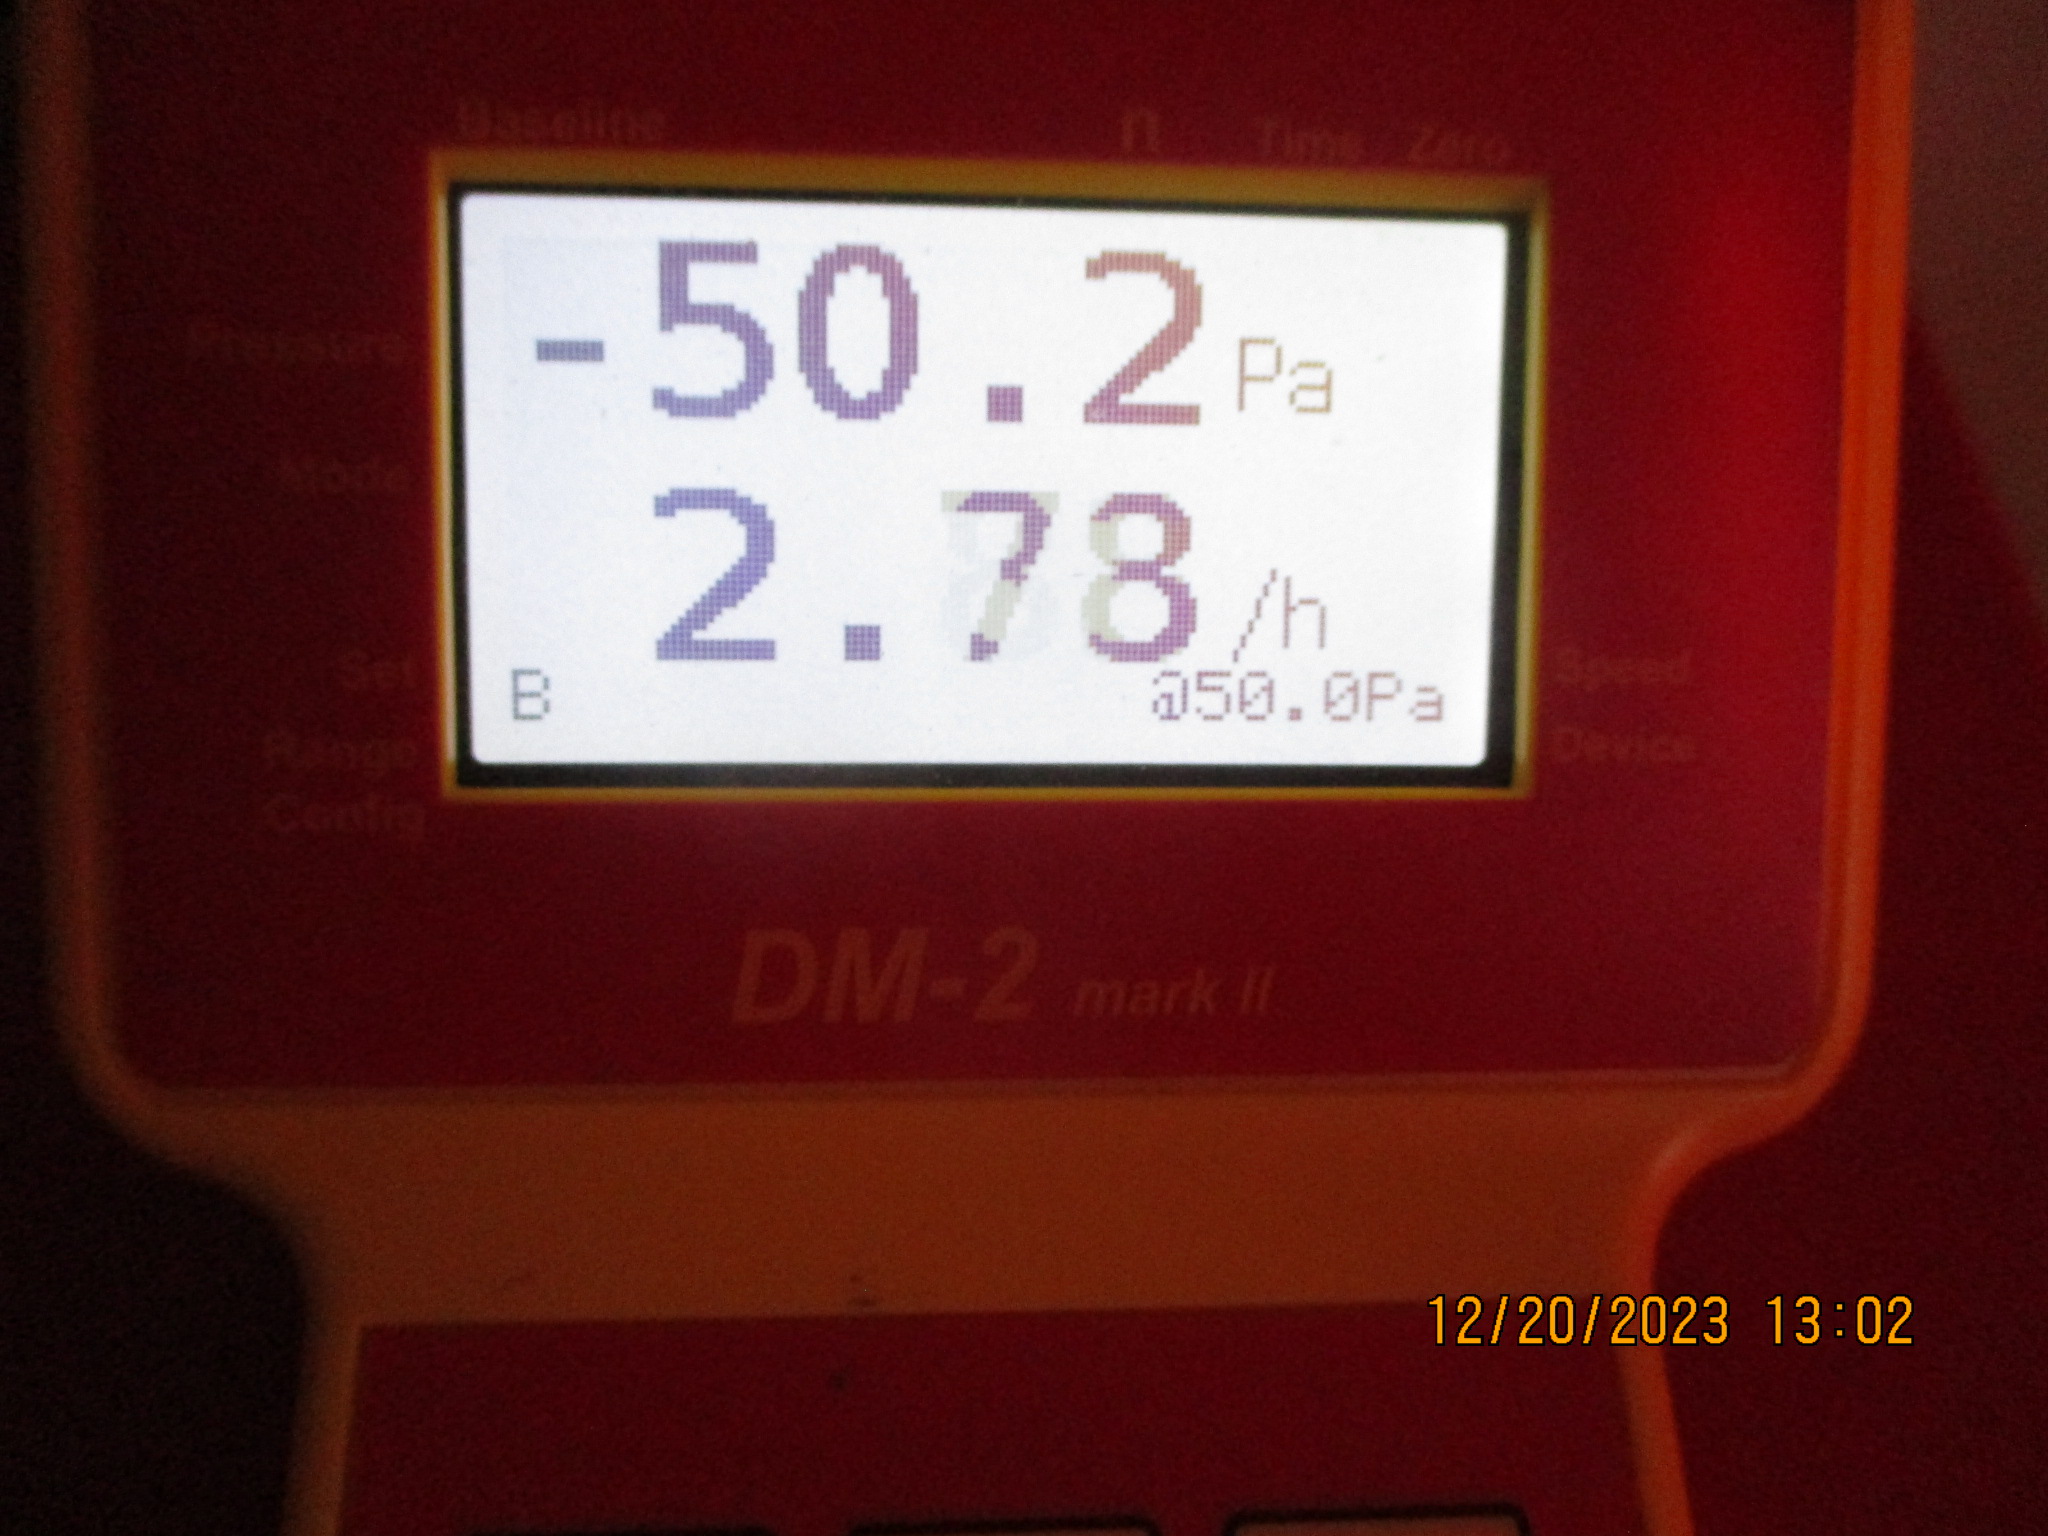 Passing meter reading